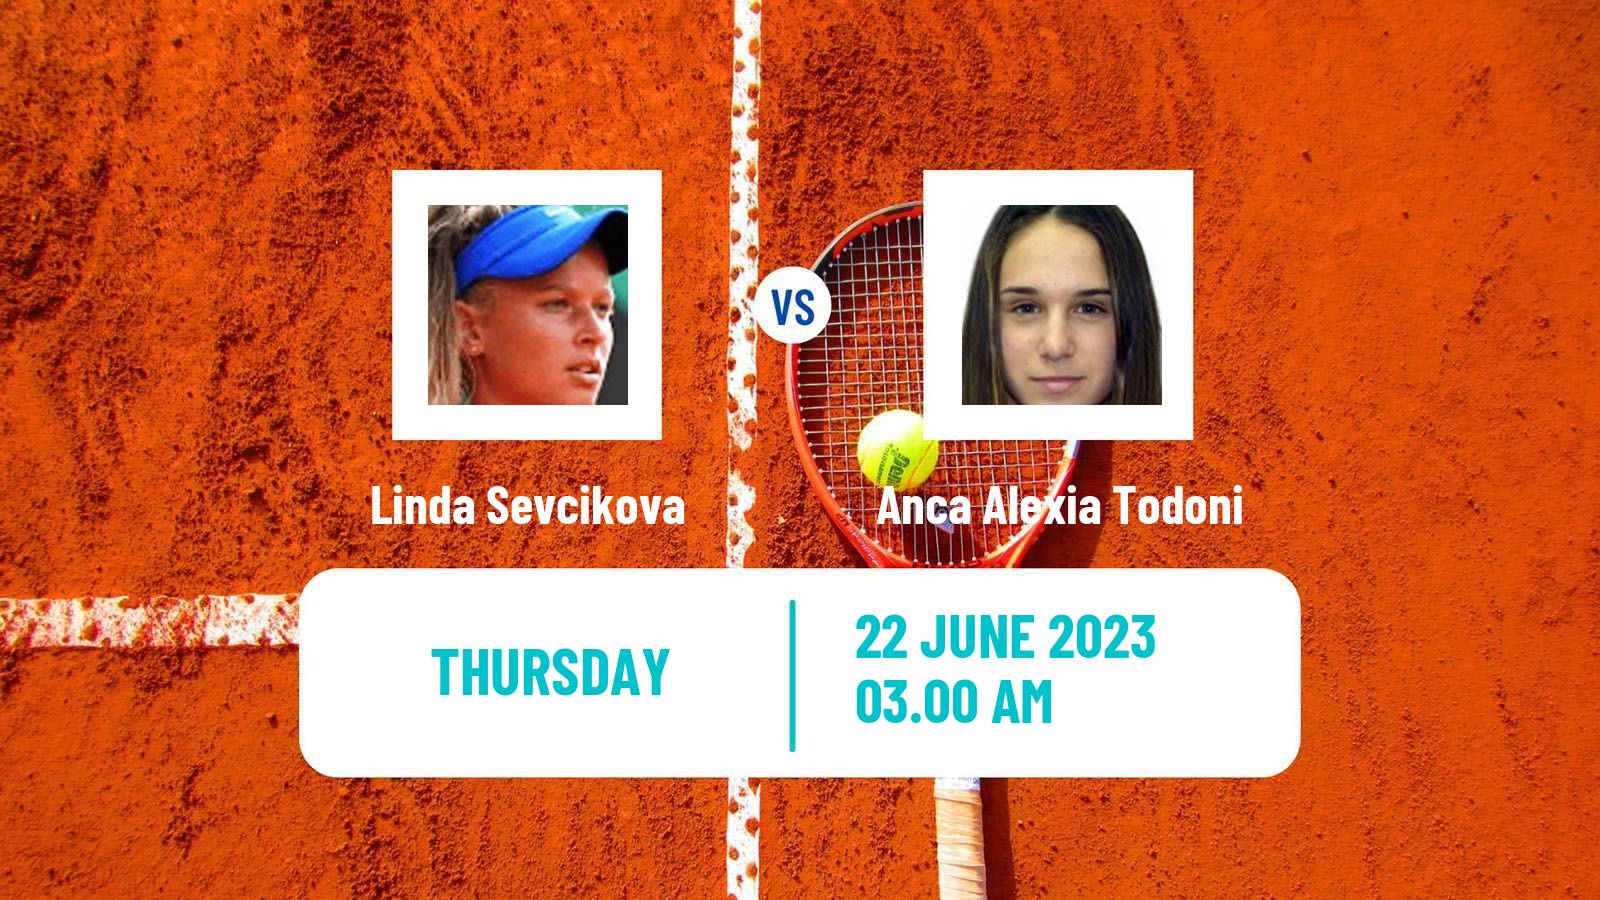 Tennis ITF W15 Bucharest Women Linda Sevcikova - Anca Alexia Todoni